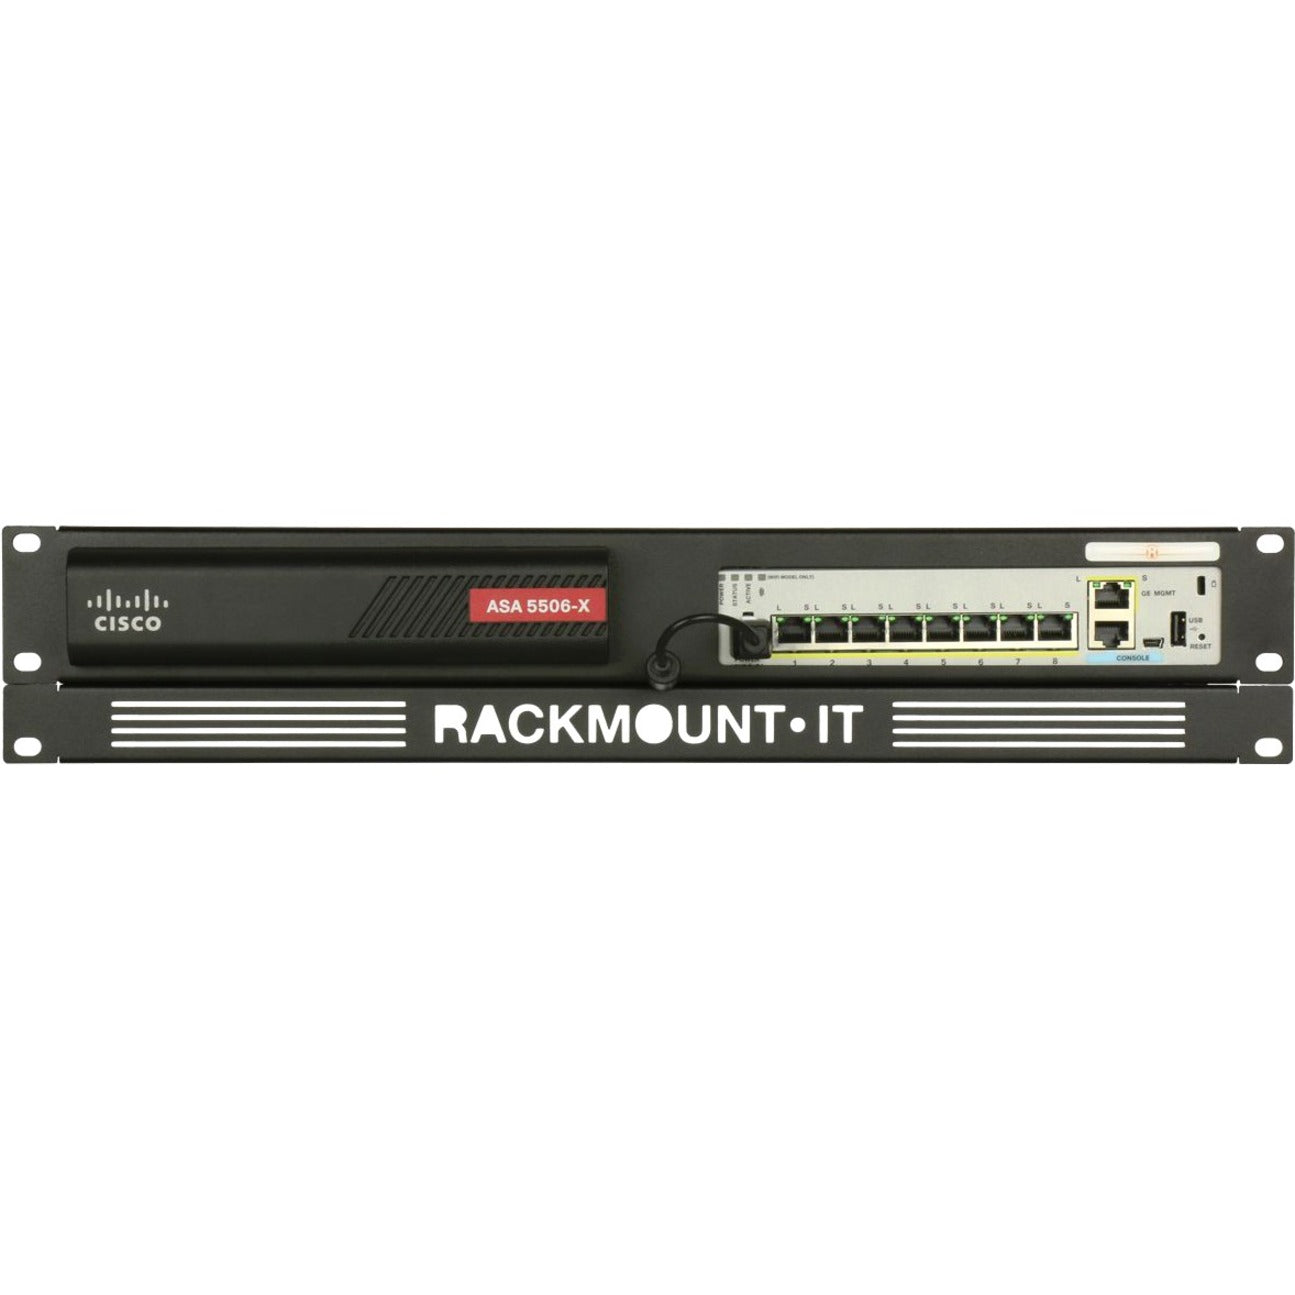 品牌名称：RACKMOUNT.IT  RACKMOUNT.IT RM-CI-T8 Cisrack 机架式支架，兼容 Cisco ASA 5506-X 和 Firepower 1010